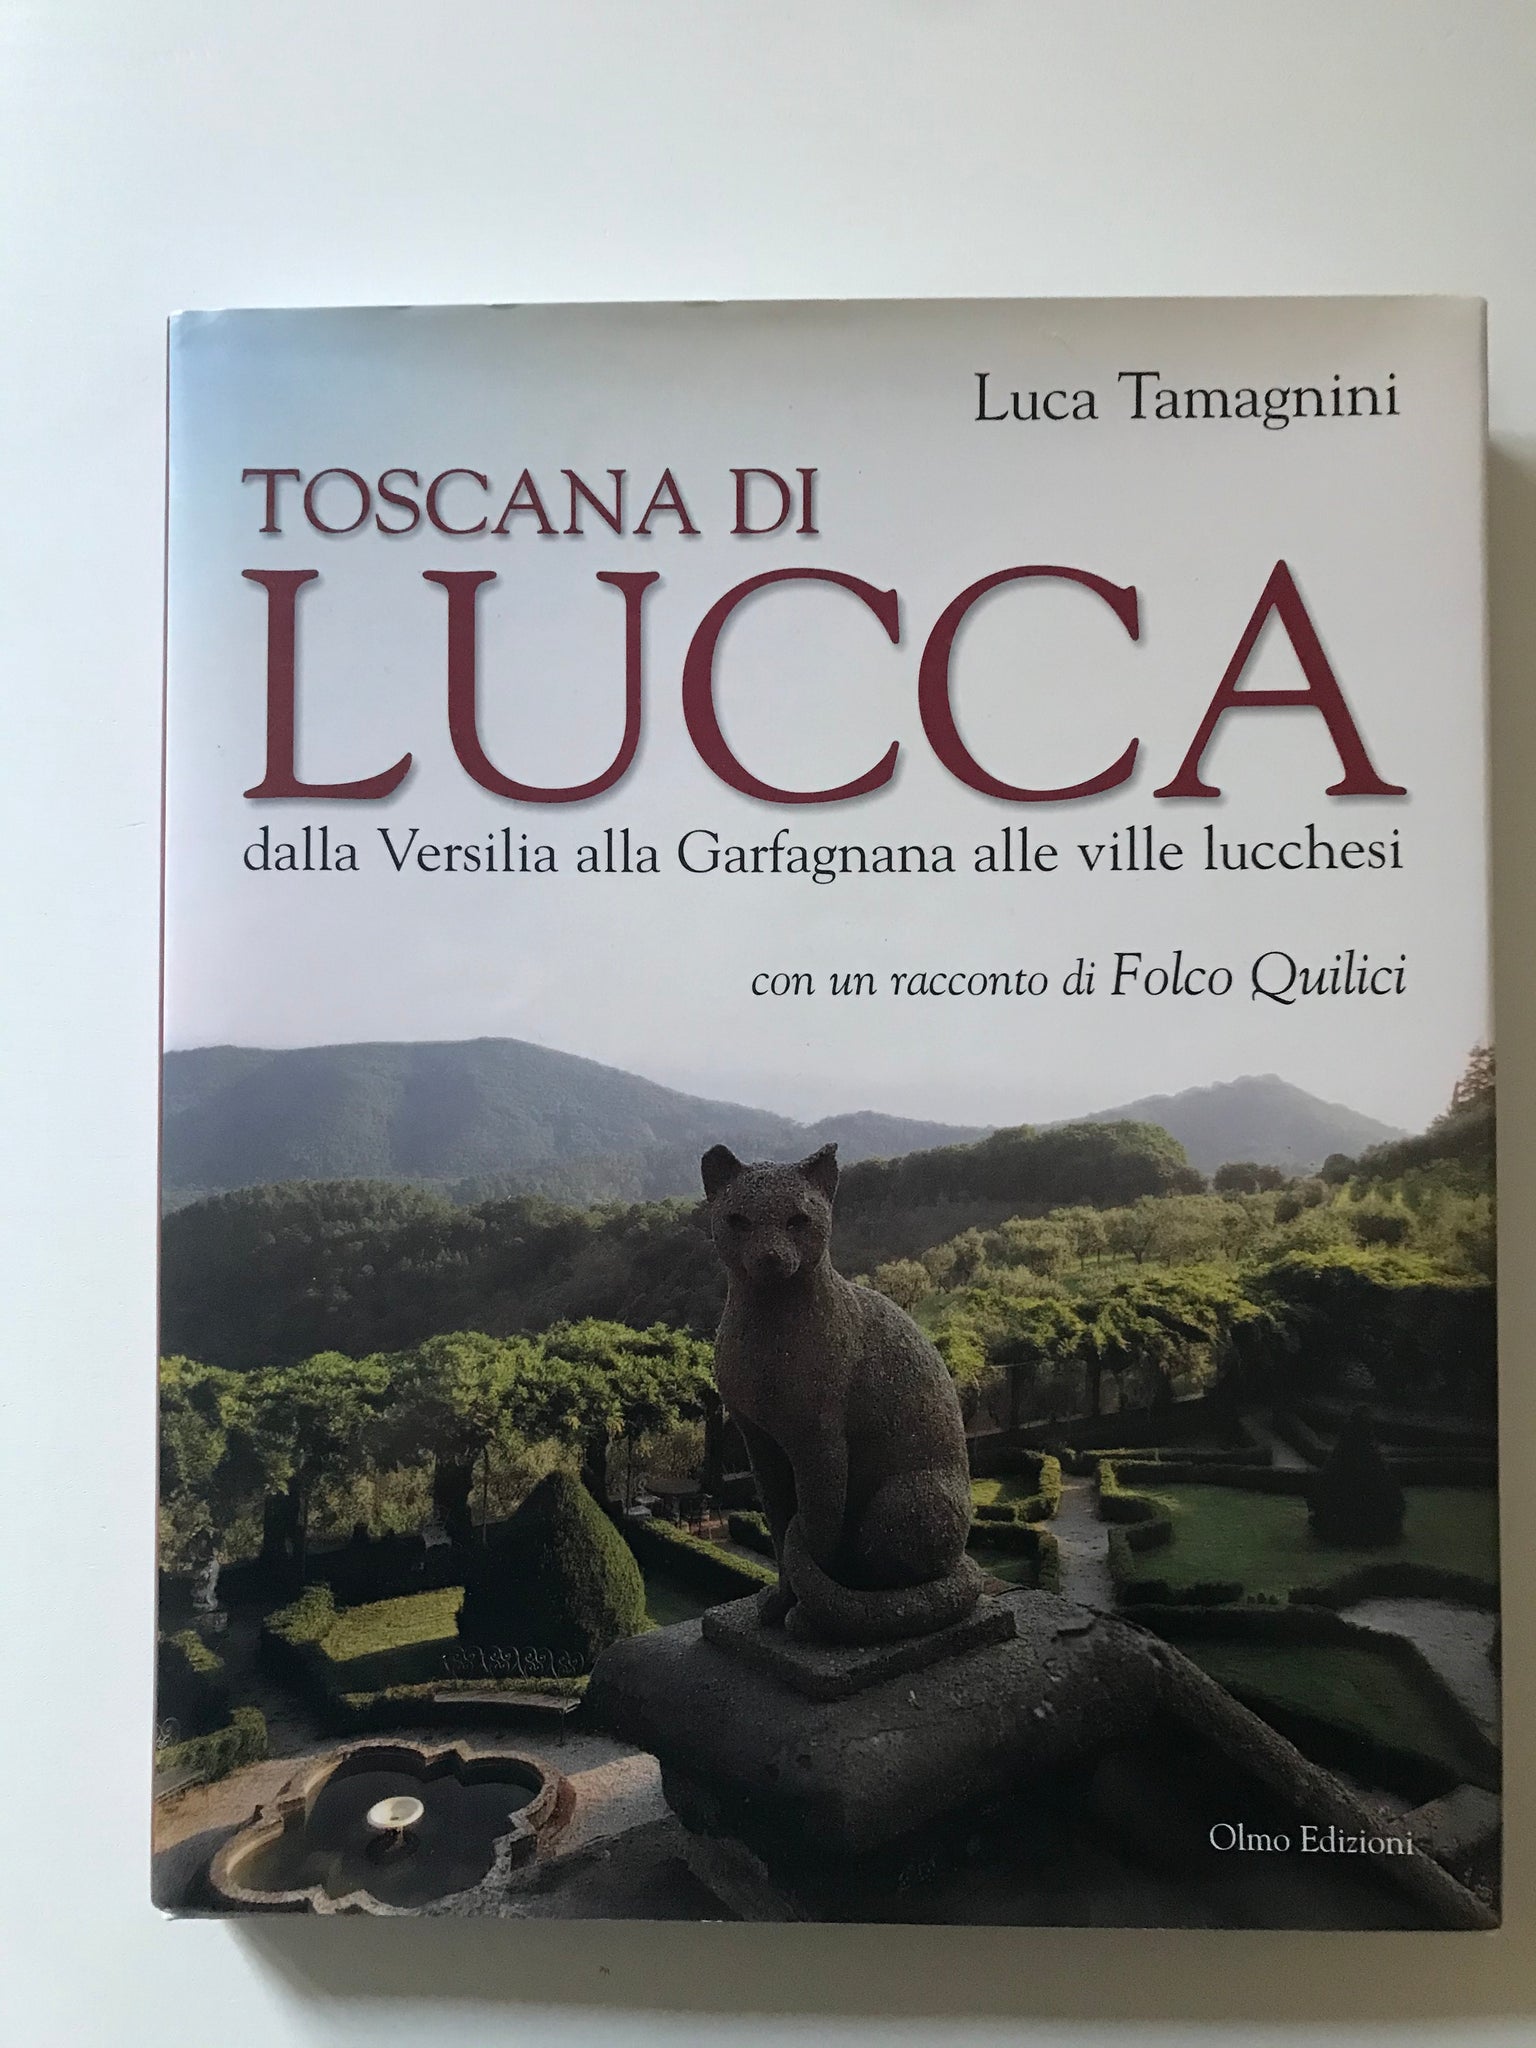 Luca Tamagnini Folco Quilici- Toscana di Lucca dalla Versilia alla Garfagnana alle ville lucchesi